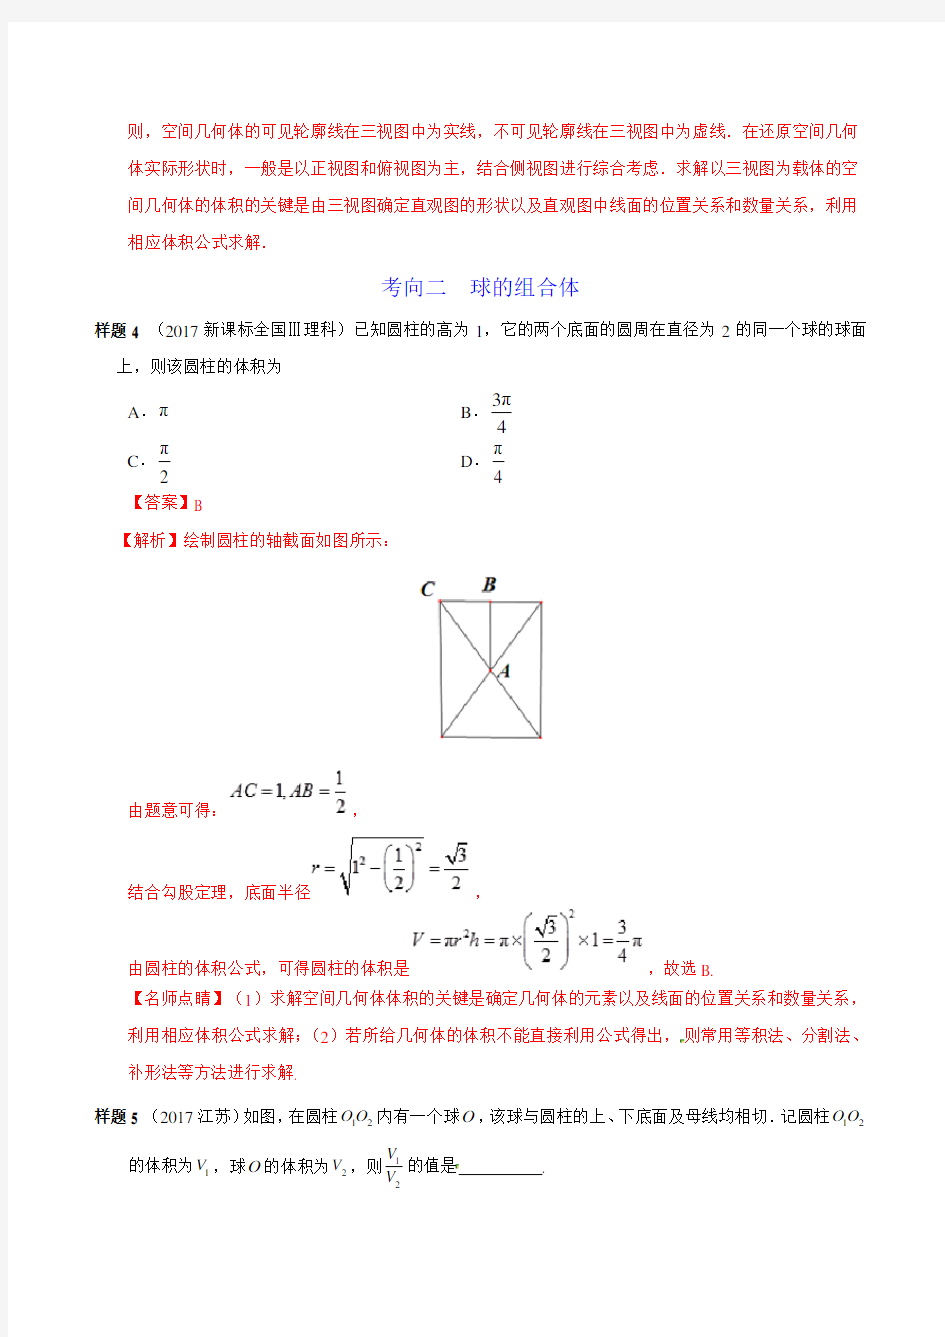 立体几何-2019年高考理科数学解读考纲